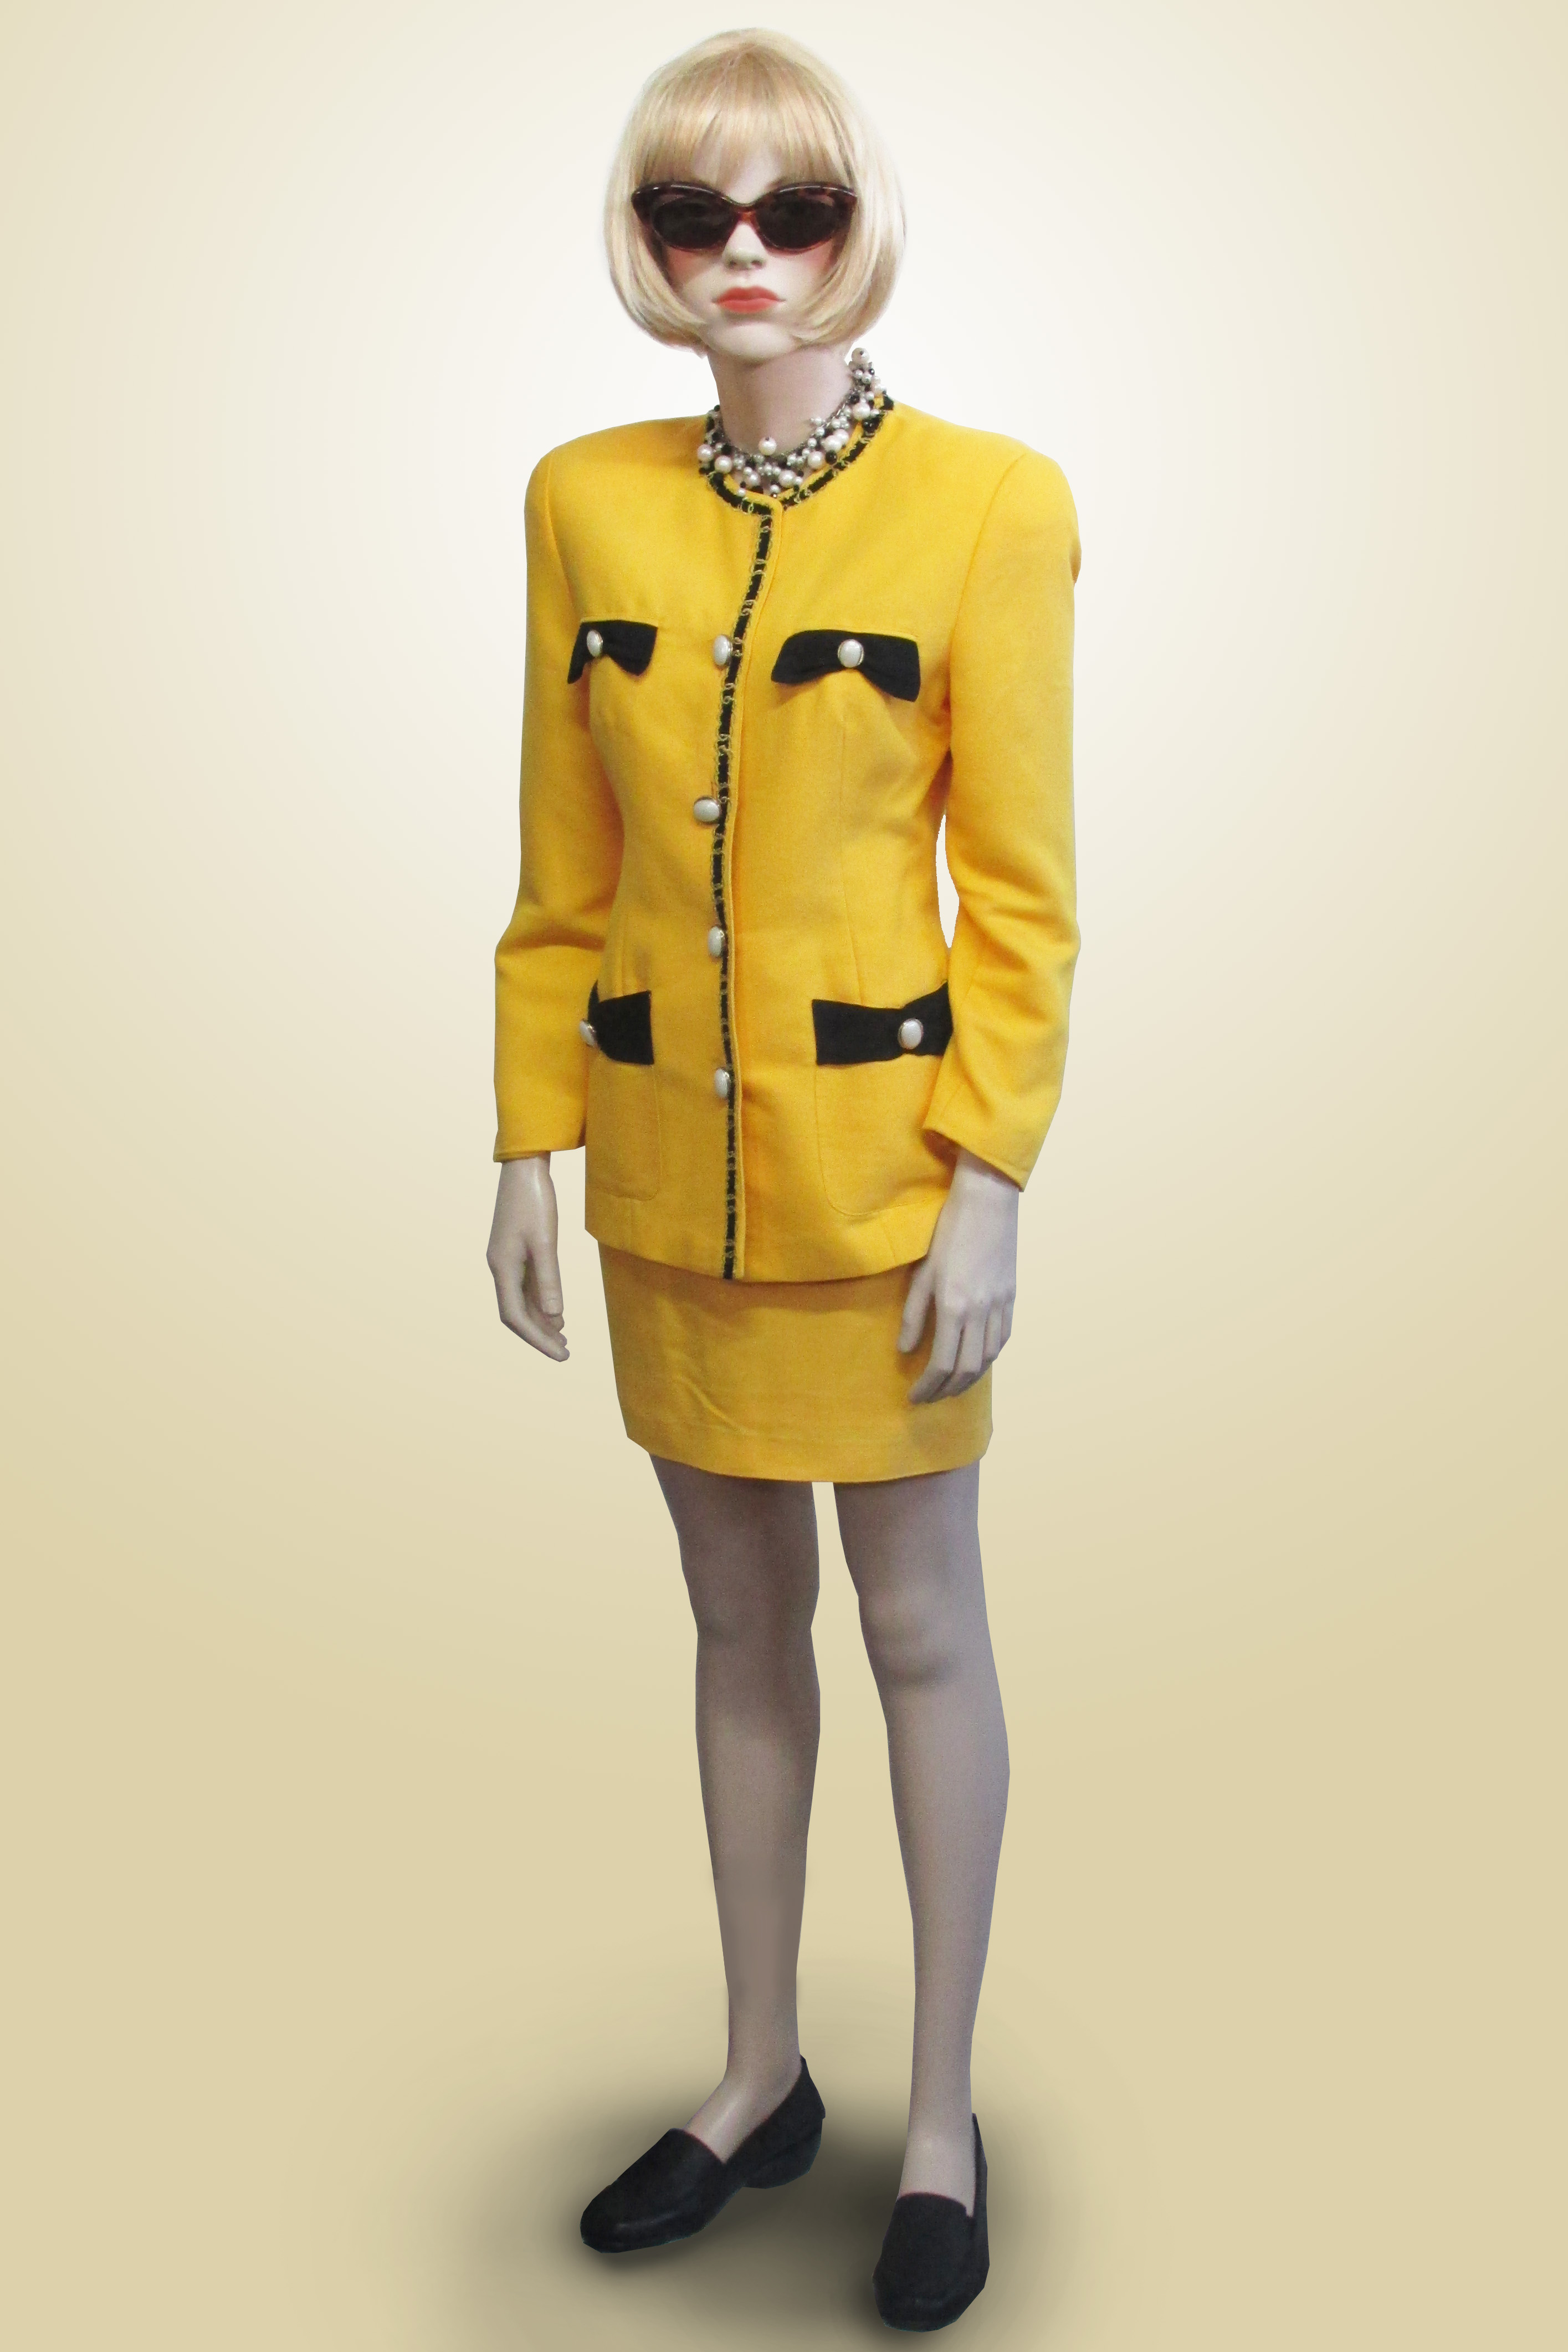 Yellow Power Suit 1980s/90s